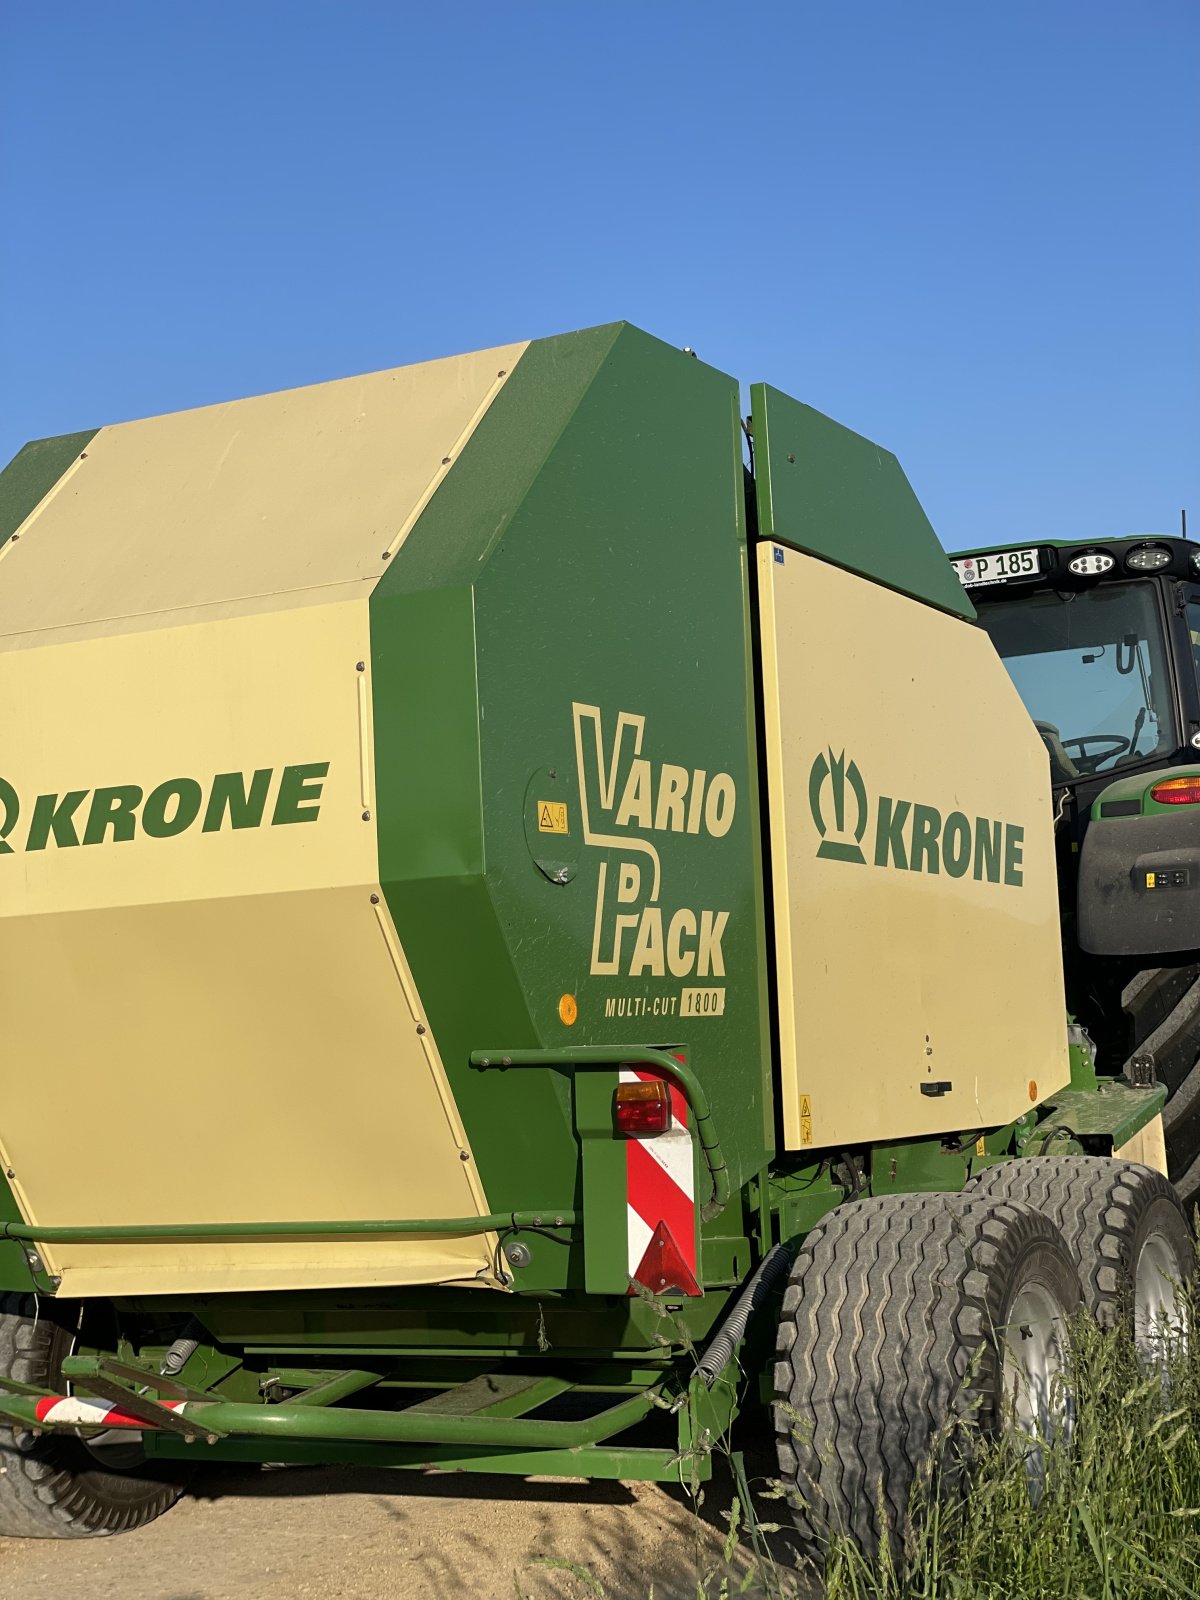 Rundballenpresse des Typs Krone Vario Pack 1800 MC, Gebrauchtmaschine in Kastl (Bild 2)